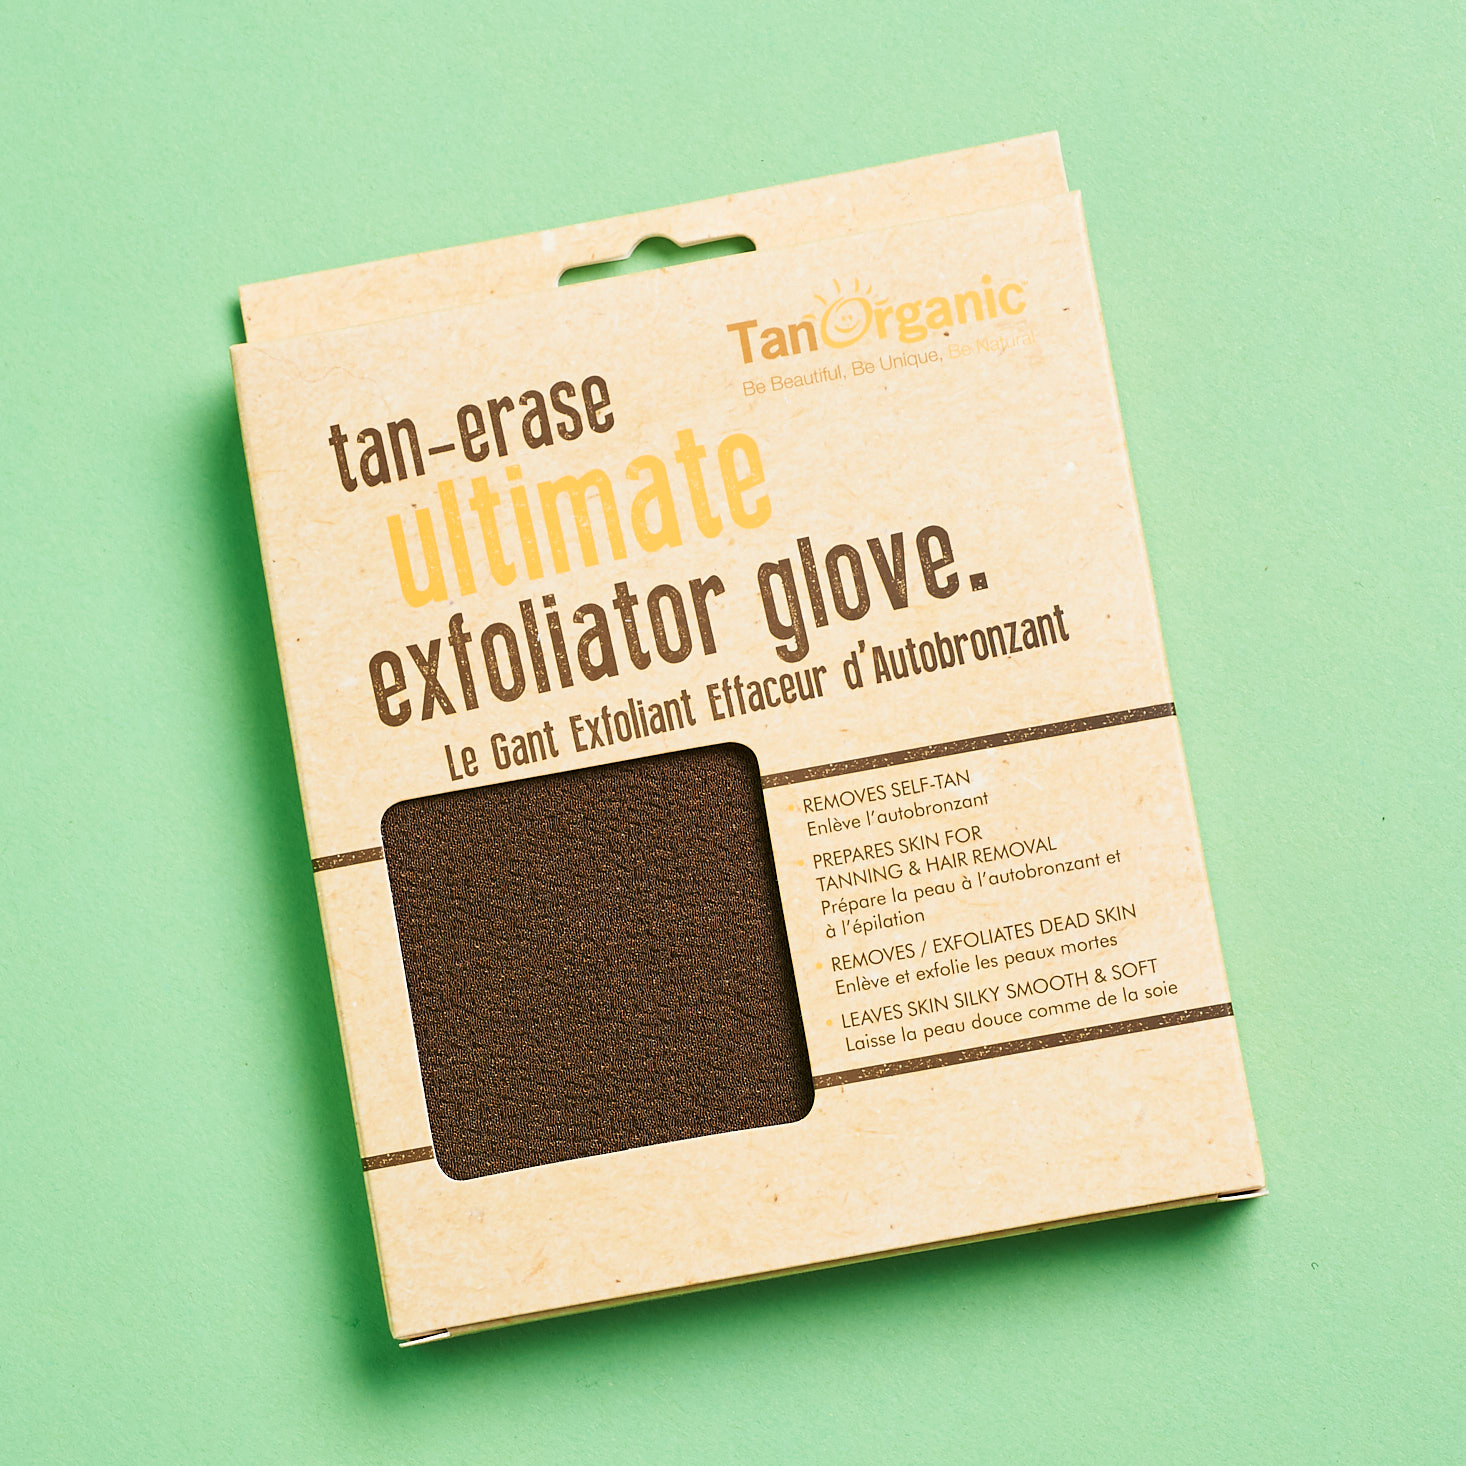 TanOrganic tan-erase ultimate exfoliator glove in box